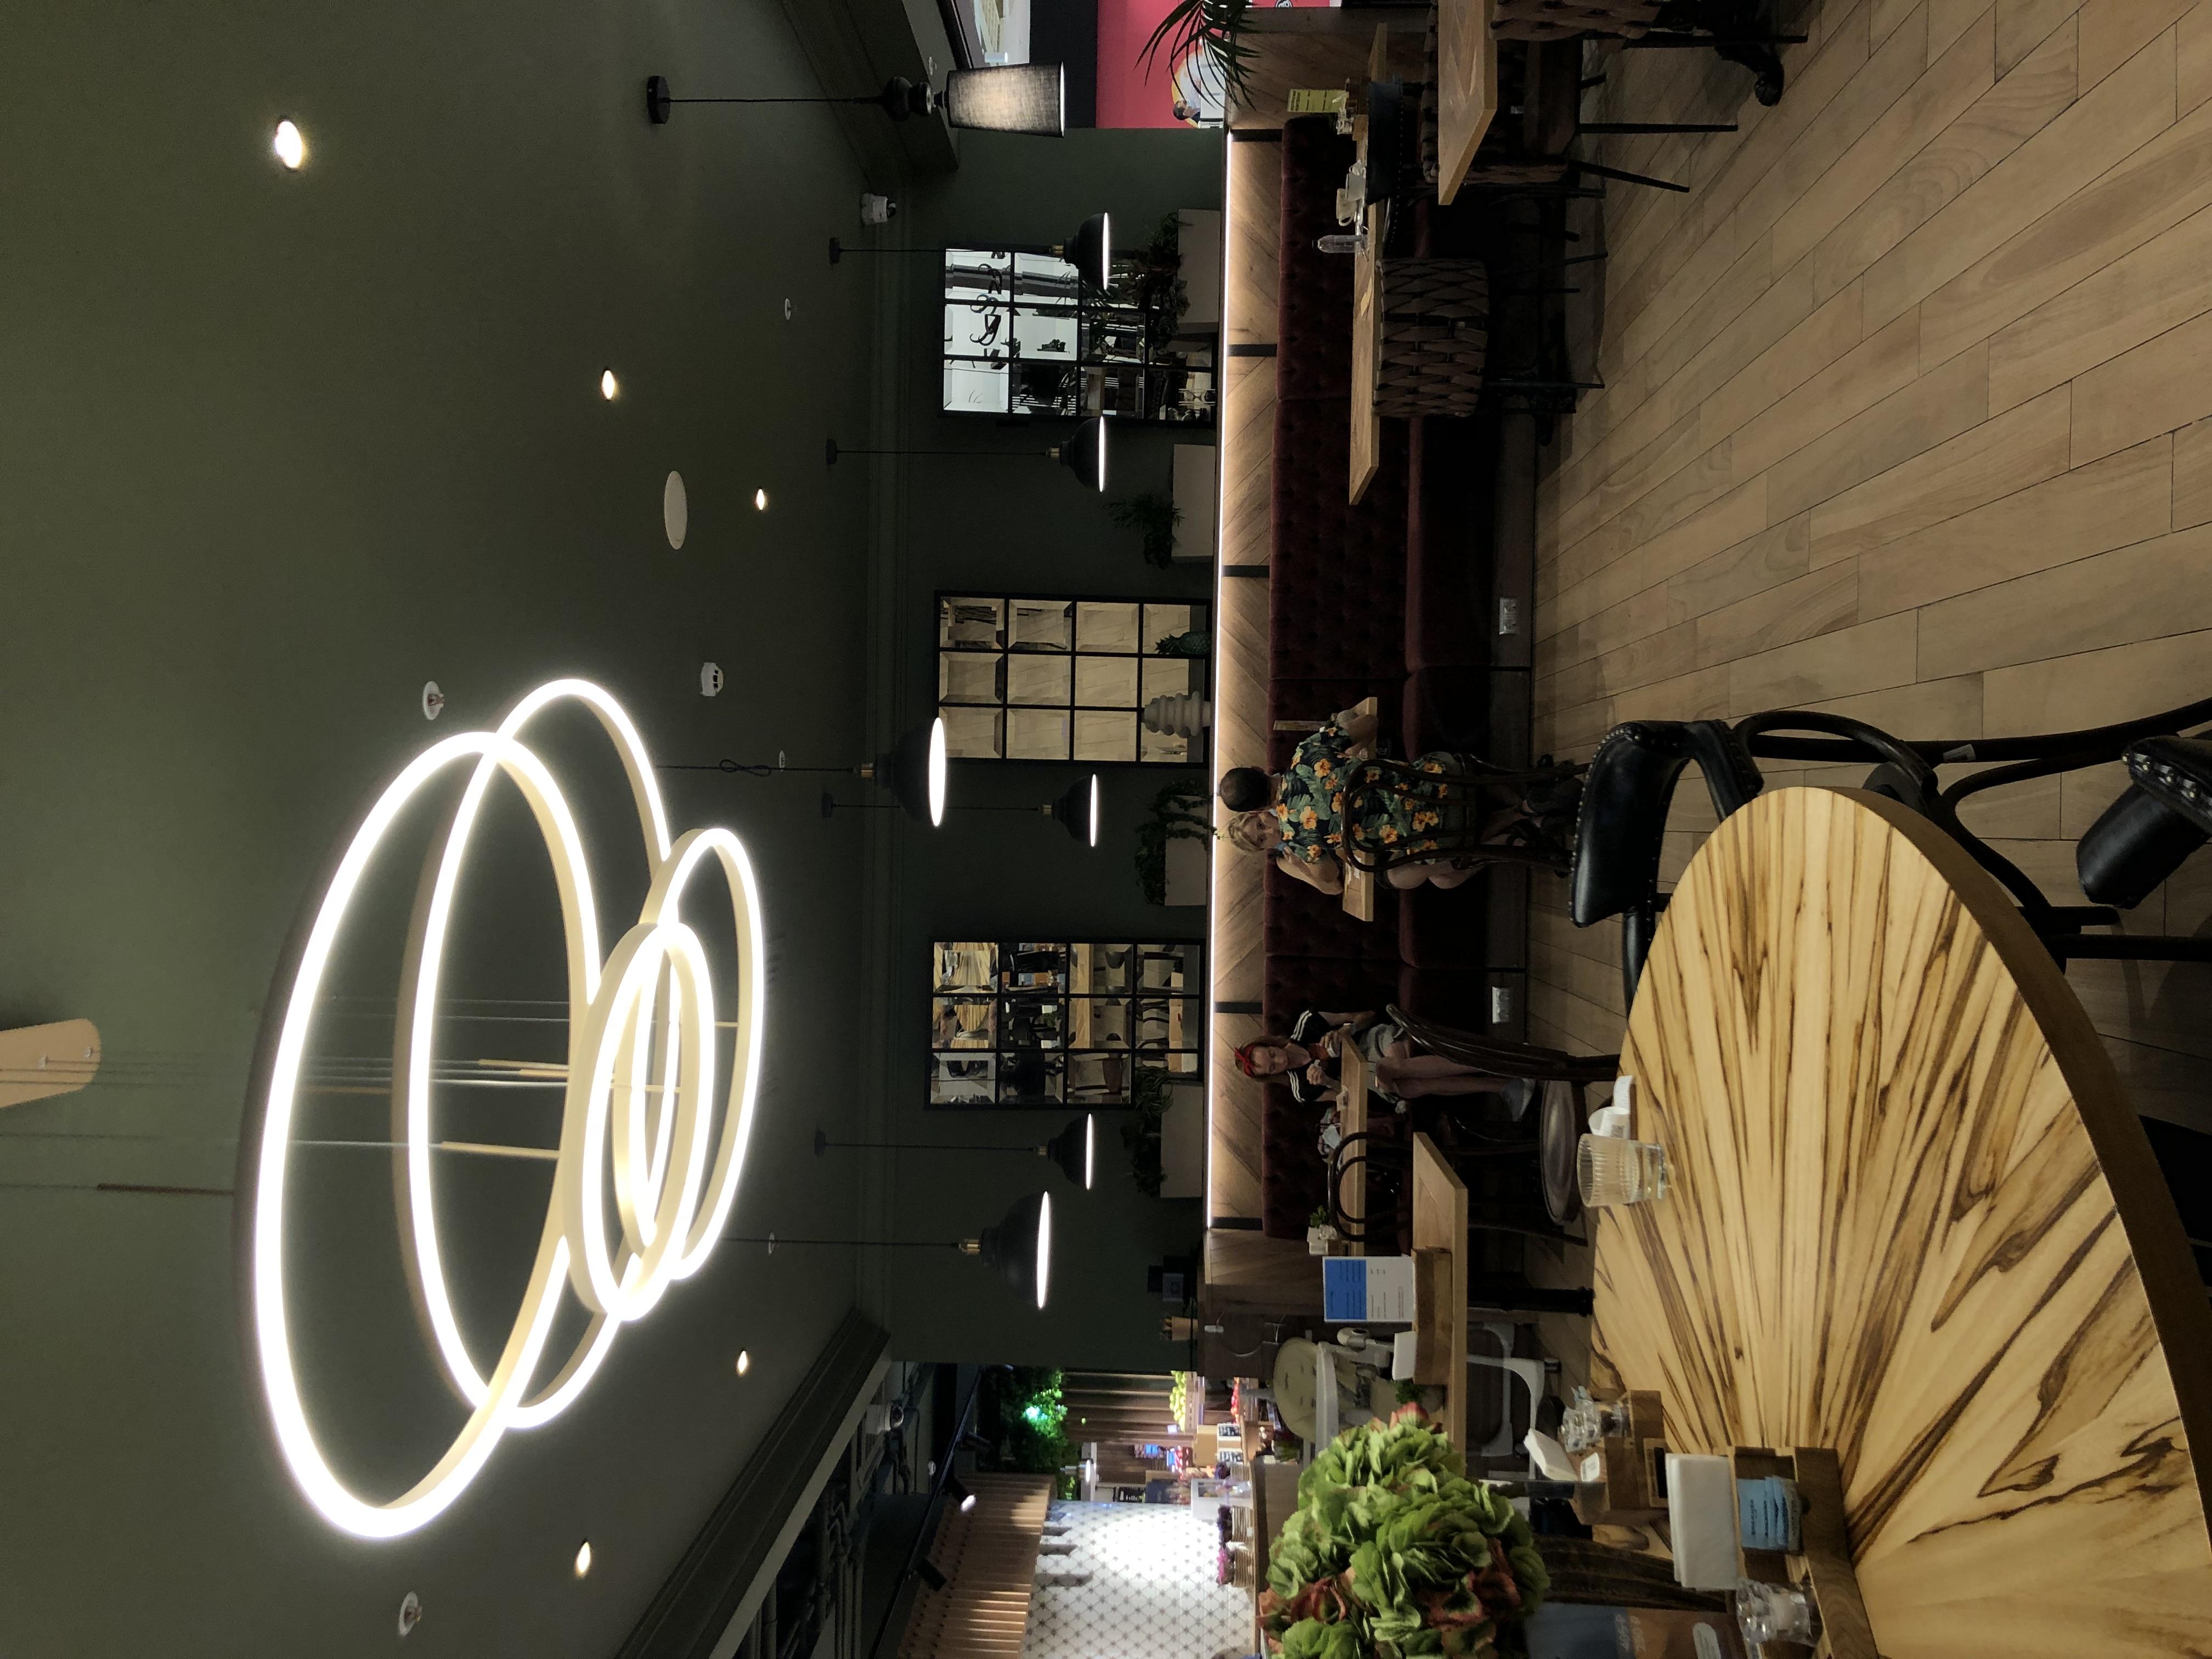 Интерьер кафе и ресторана cветовыми линиями, подсветкой настенной, подсветкой светодиодной и с подсветкой